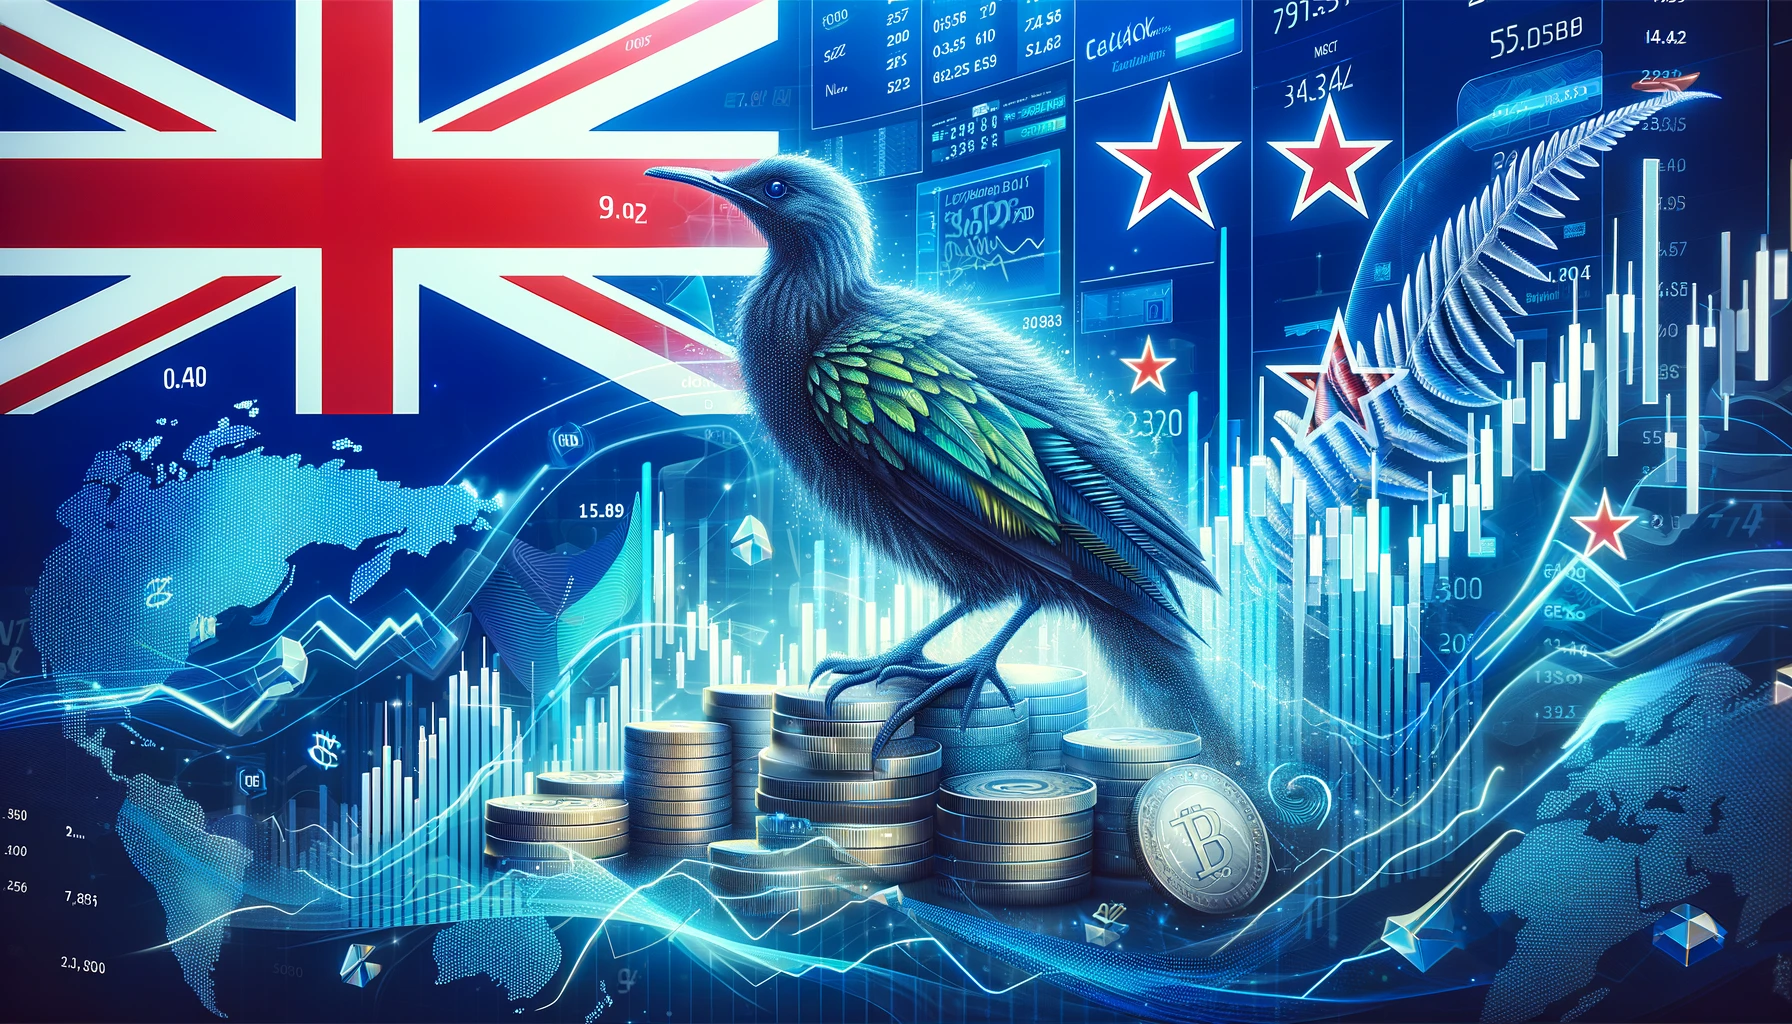 تبدأ سلطة الأسواق المالية في نيوزيلندا إجراءات قضائية ضد شركة بوستر